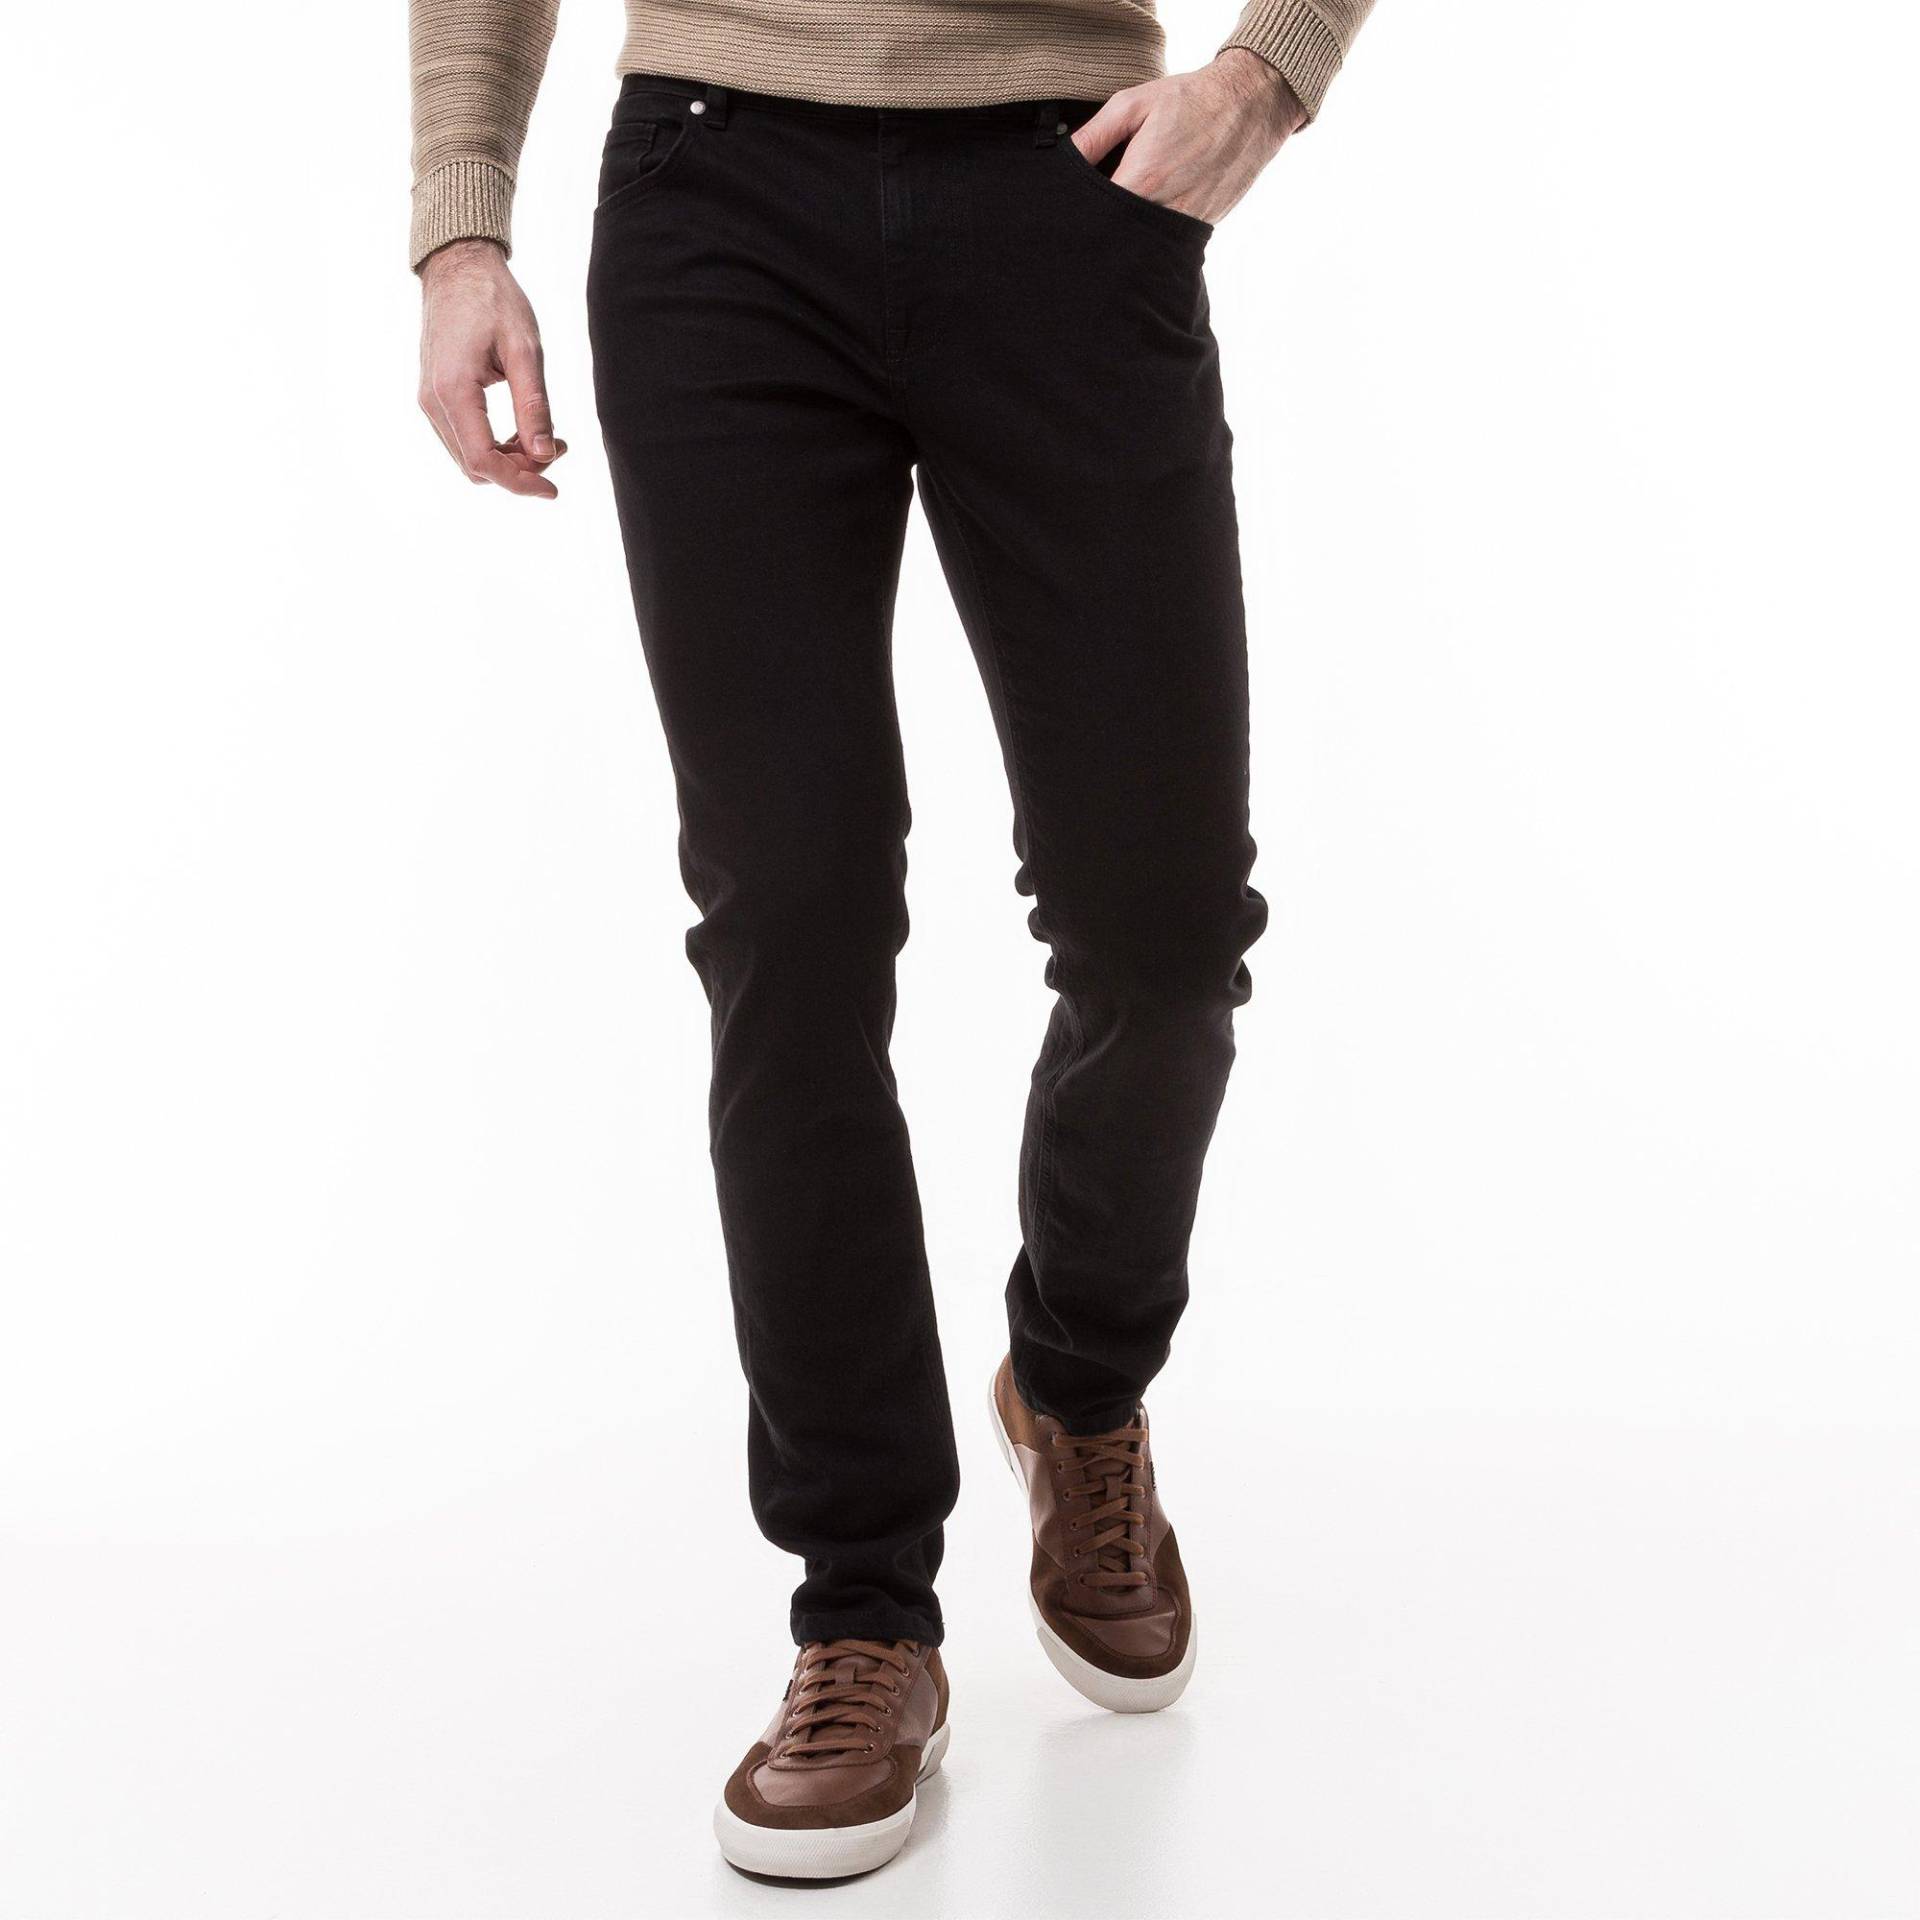 Jeans, Slim Fit Herren Black L30/W36 von Manor Man